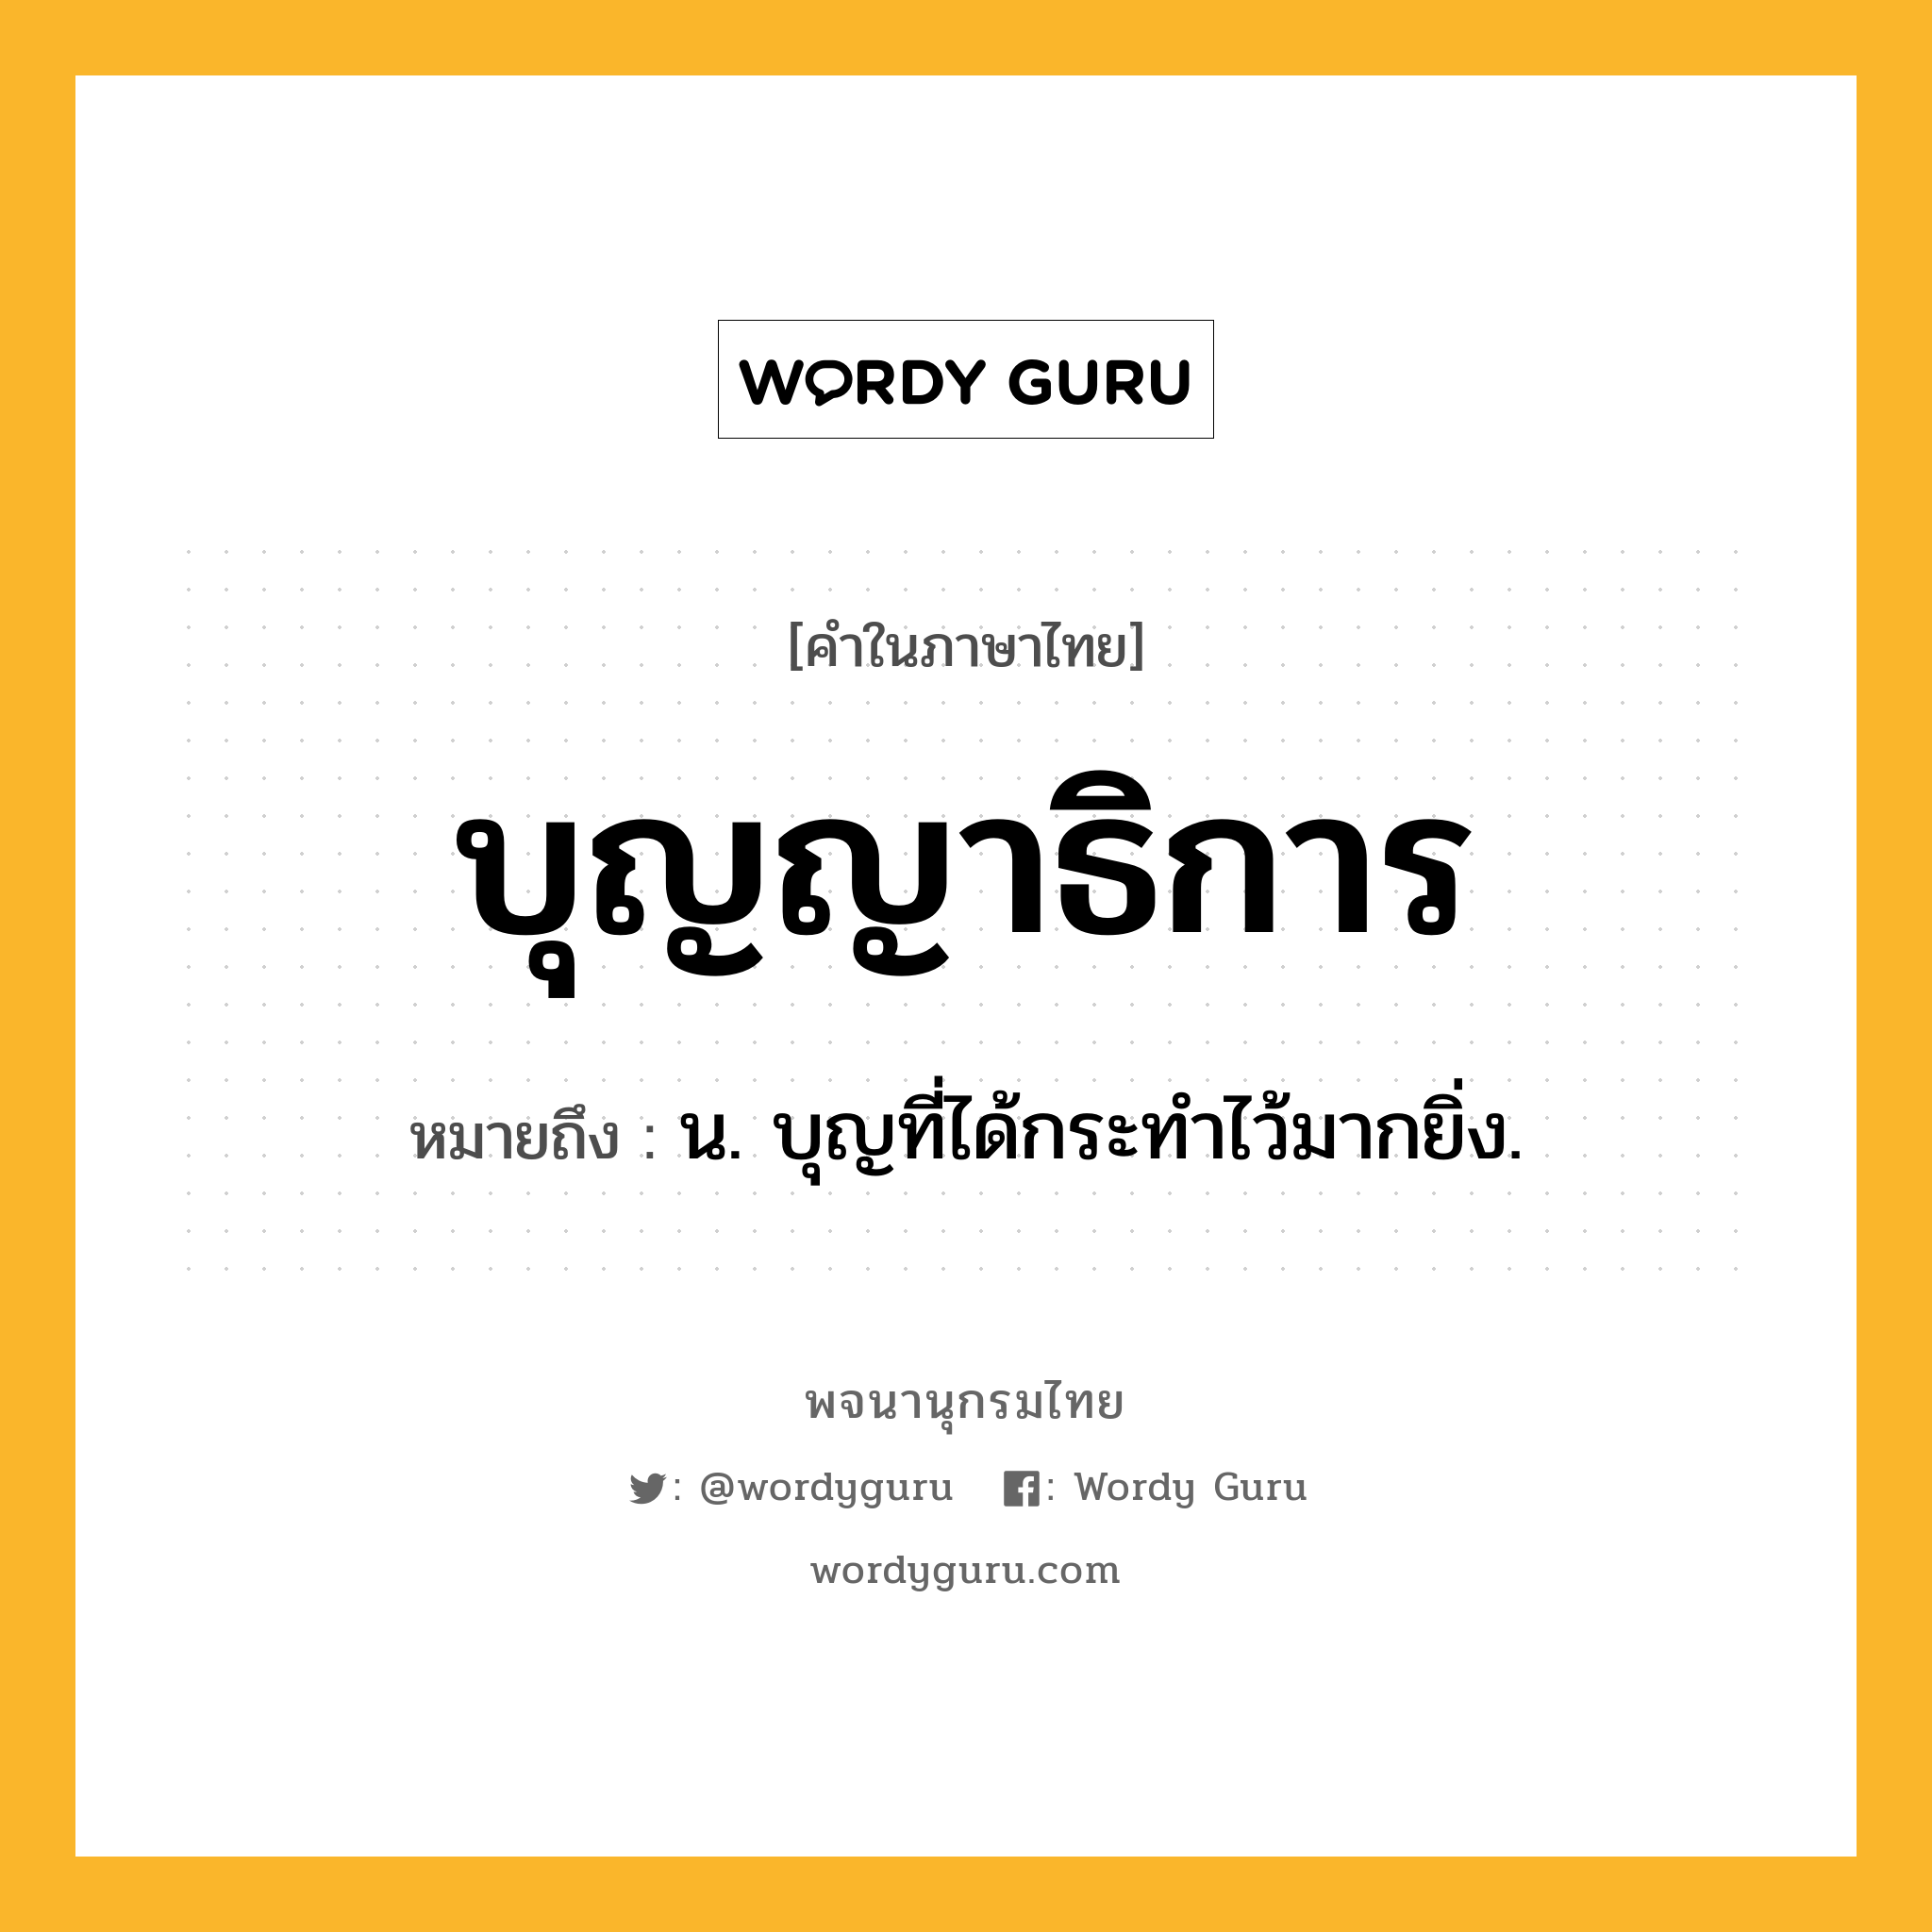 บุญญาธิการ ความหมาย หมายถึงอะไร?, คำในภาษาไทย บุญญาธิการ หมายถึง น. บุญที่ได้กระทำไว้มากยิ่ง.